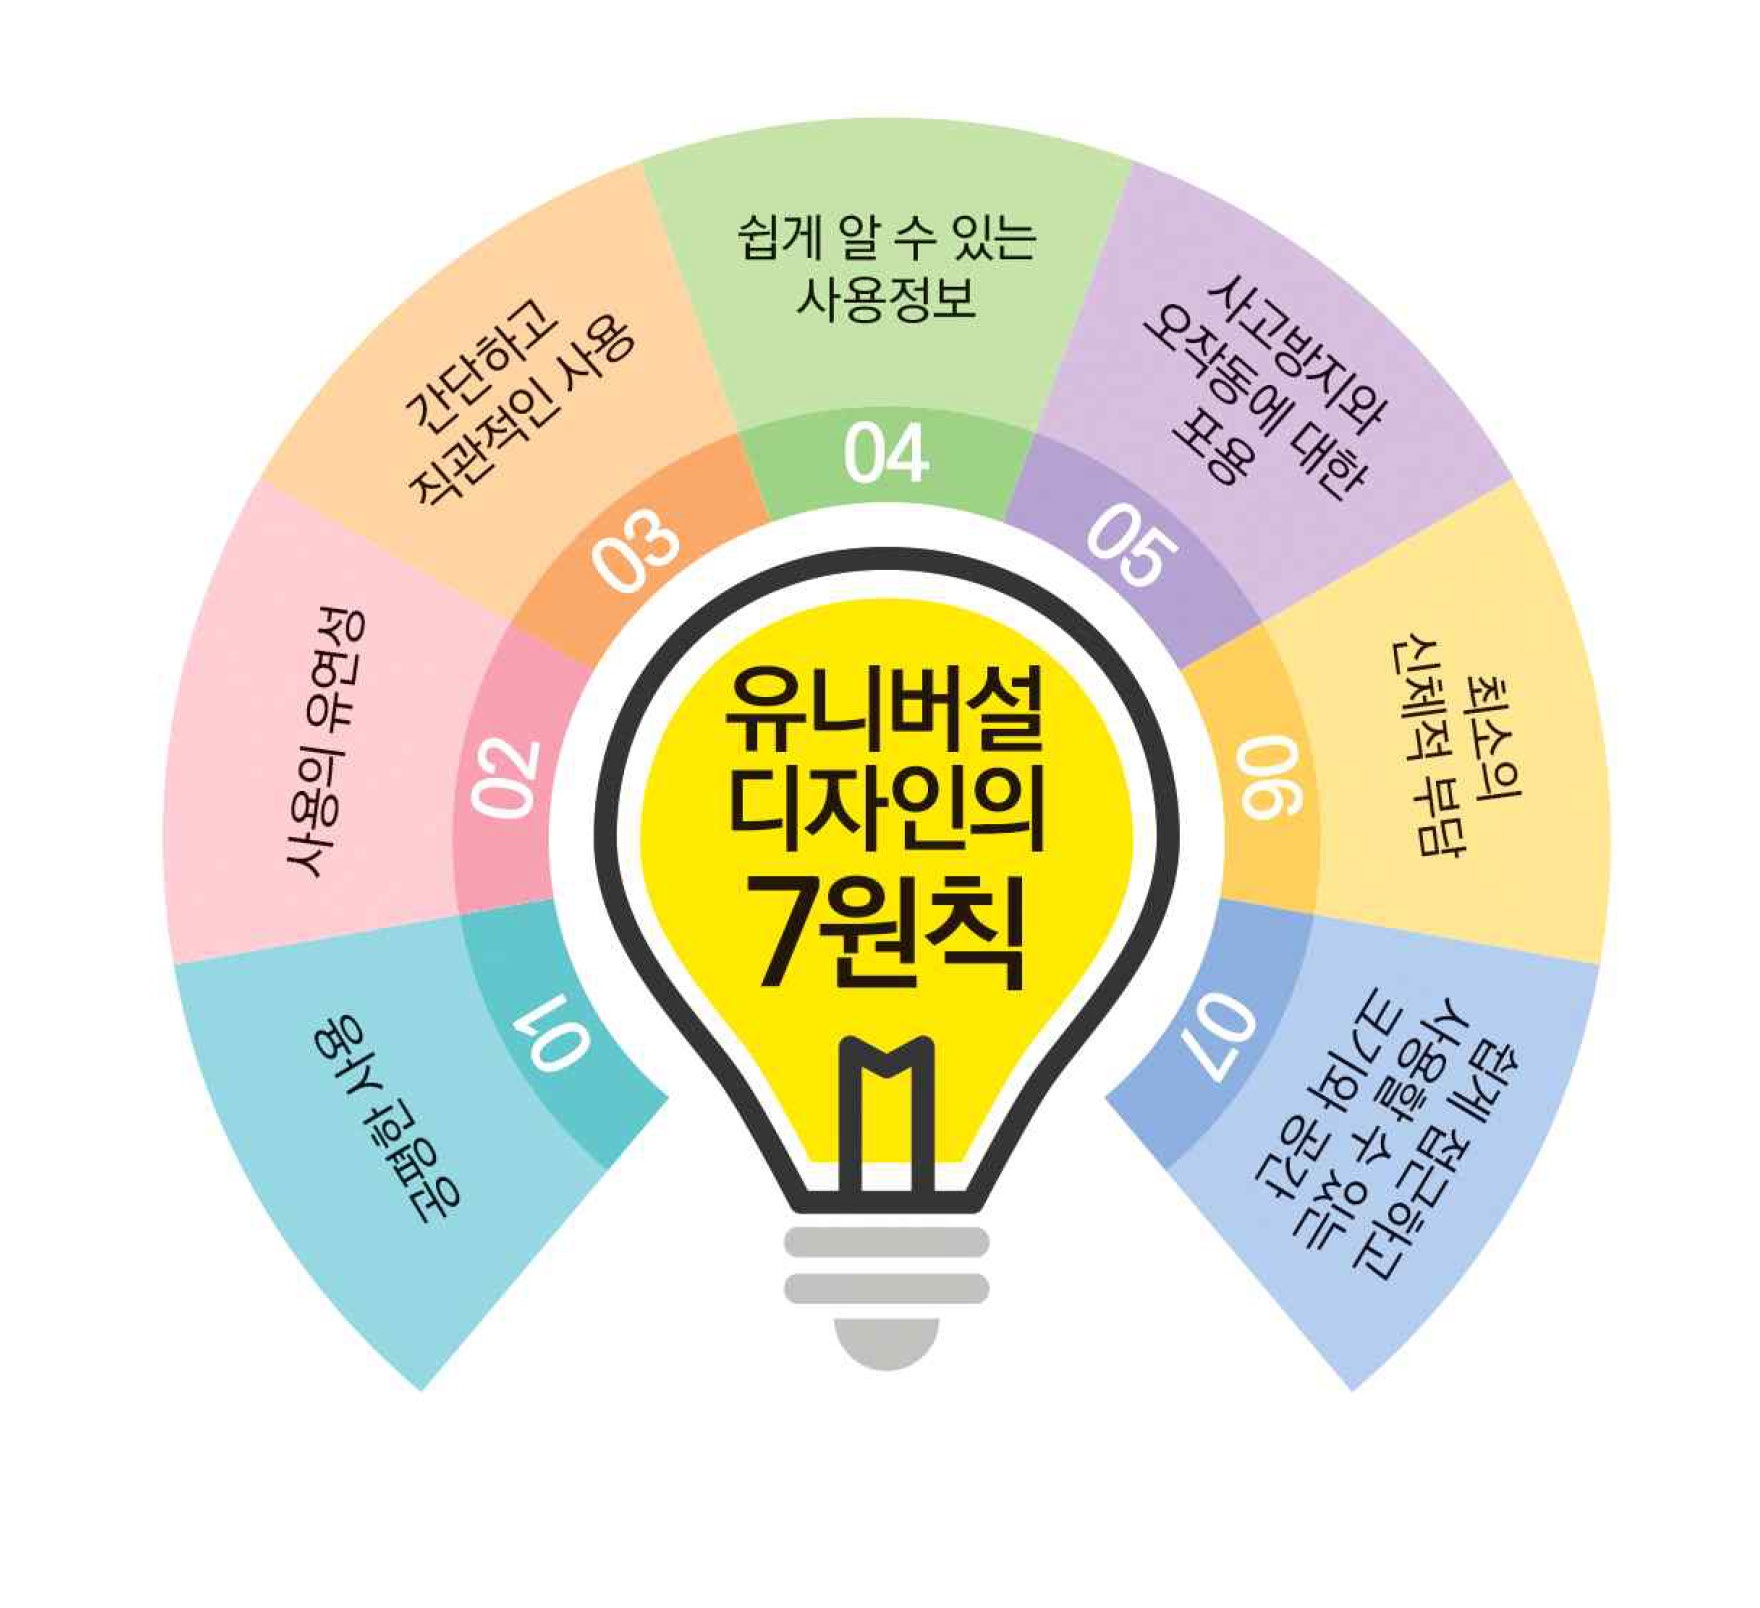 경기도 교육청 유니버셜디자인 가이드라인